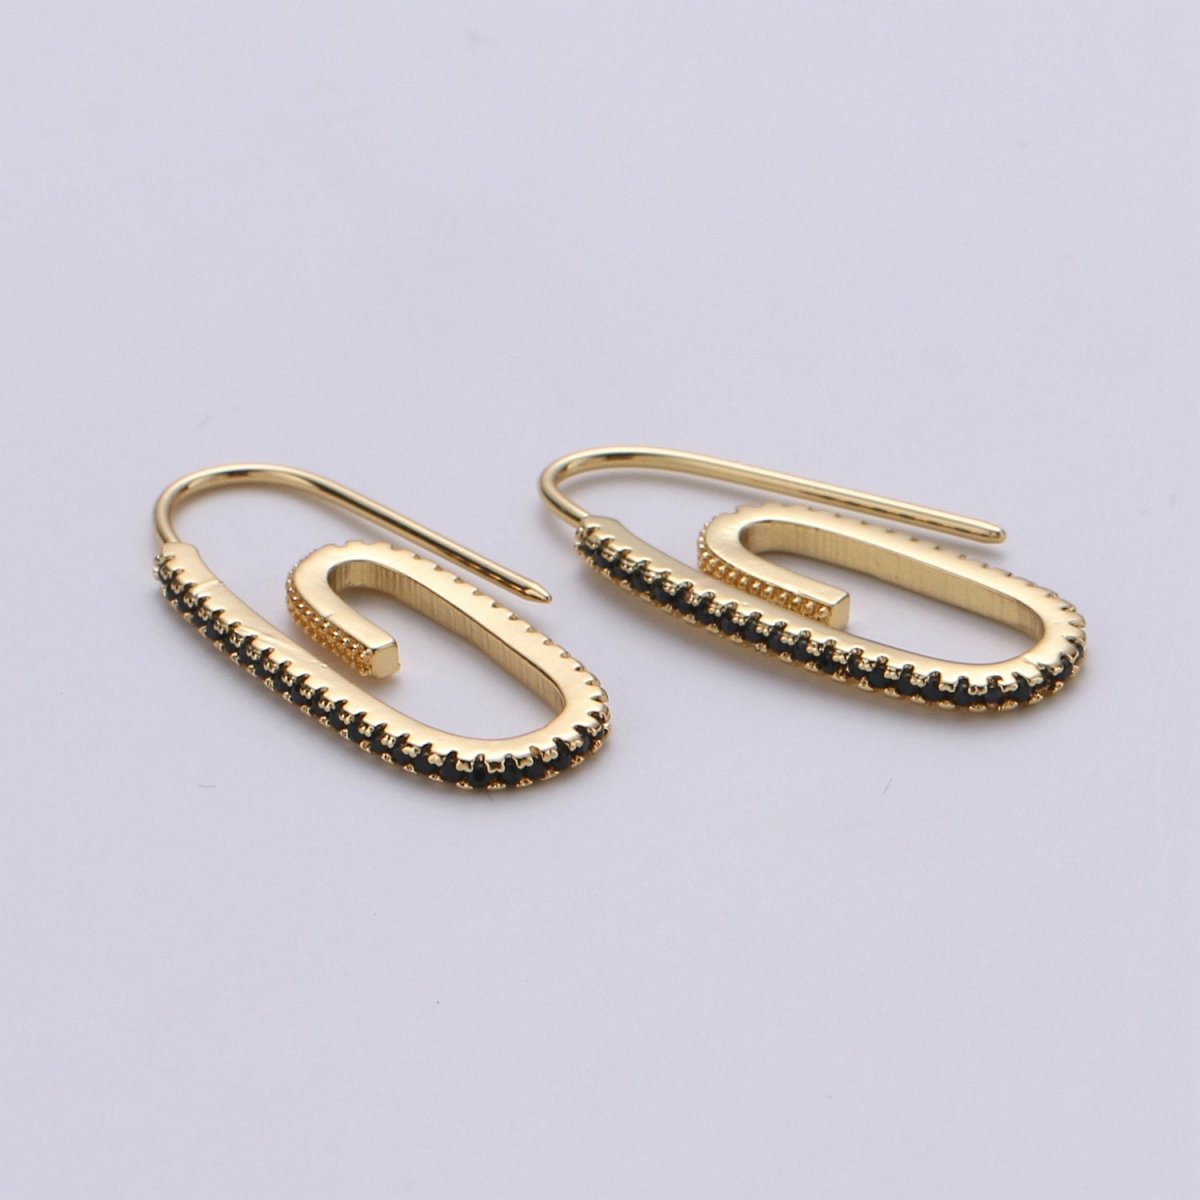 Paper Clip Earrings, Micro Pave Paper Clip Earrings, Trend Jewelry, Gold Hoop Earrings Clear, Green Black Blue Purple CZ Earring K-633 K-636 - K-638 - DLUXCA